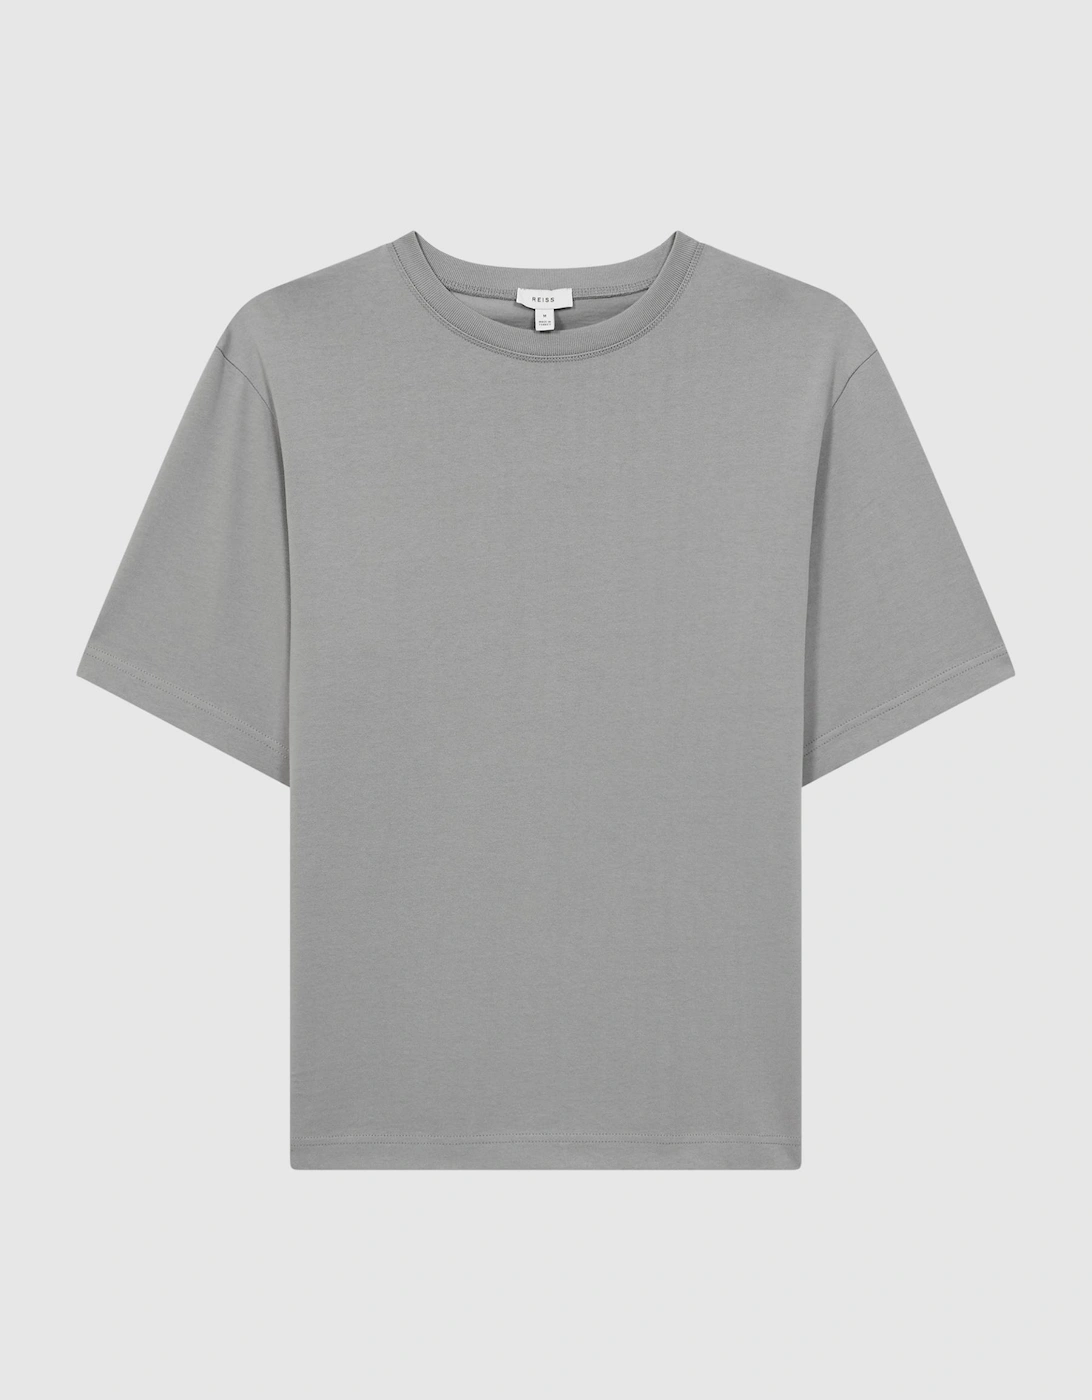 Oversized Garment Dye T-Shirt, 2 of 1